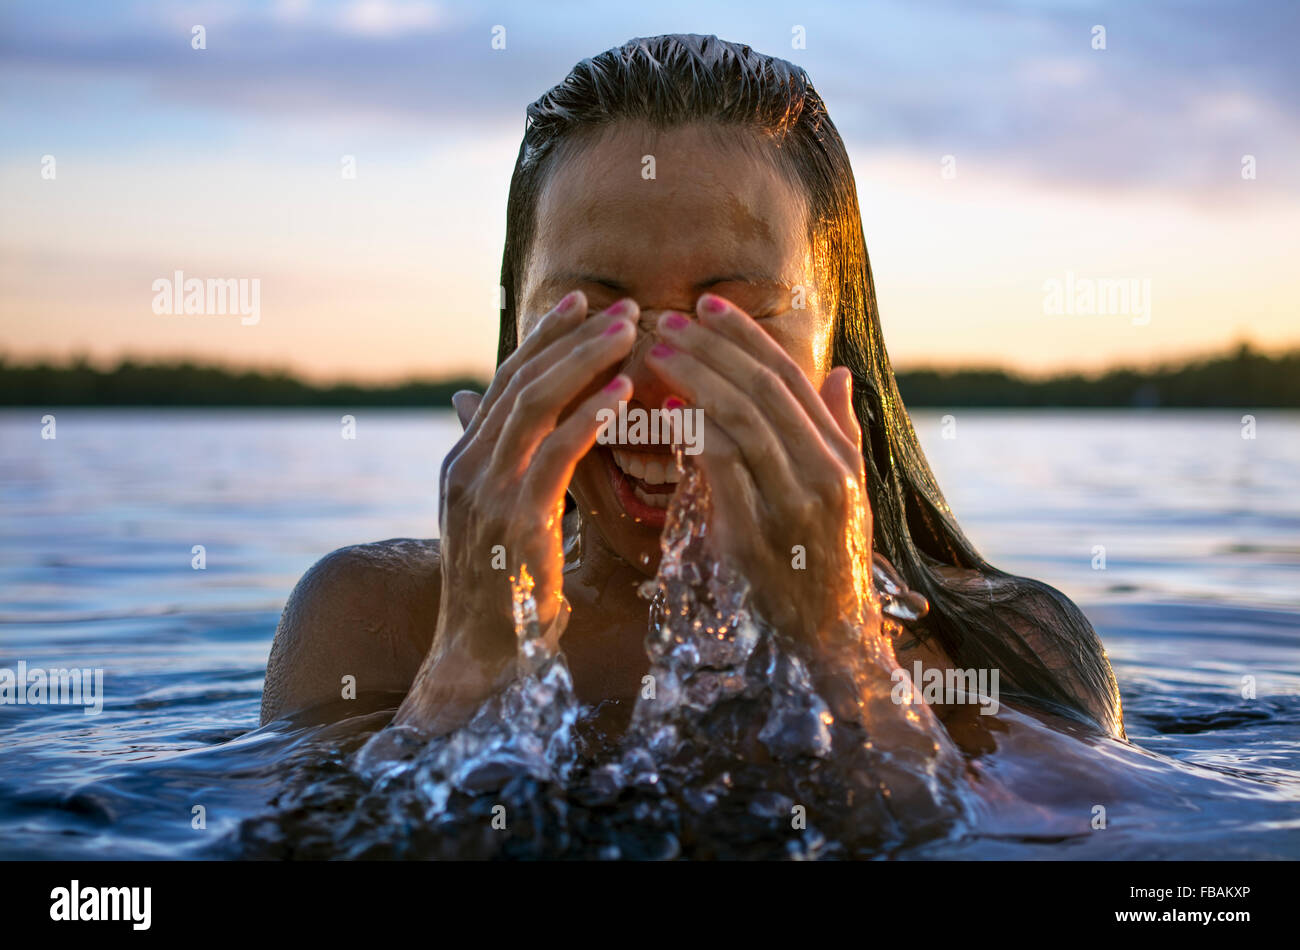 Finnland, Pohjanmaa, Luoto, junge Frau aus Wasser Stockfoto